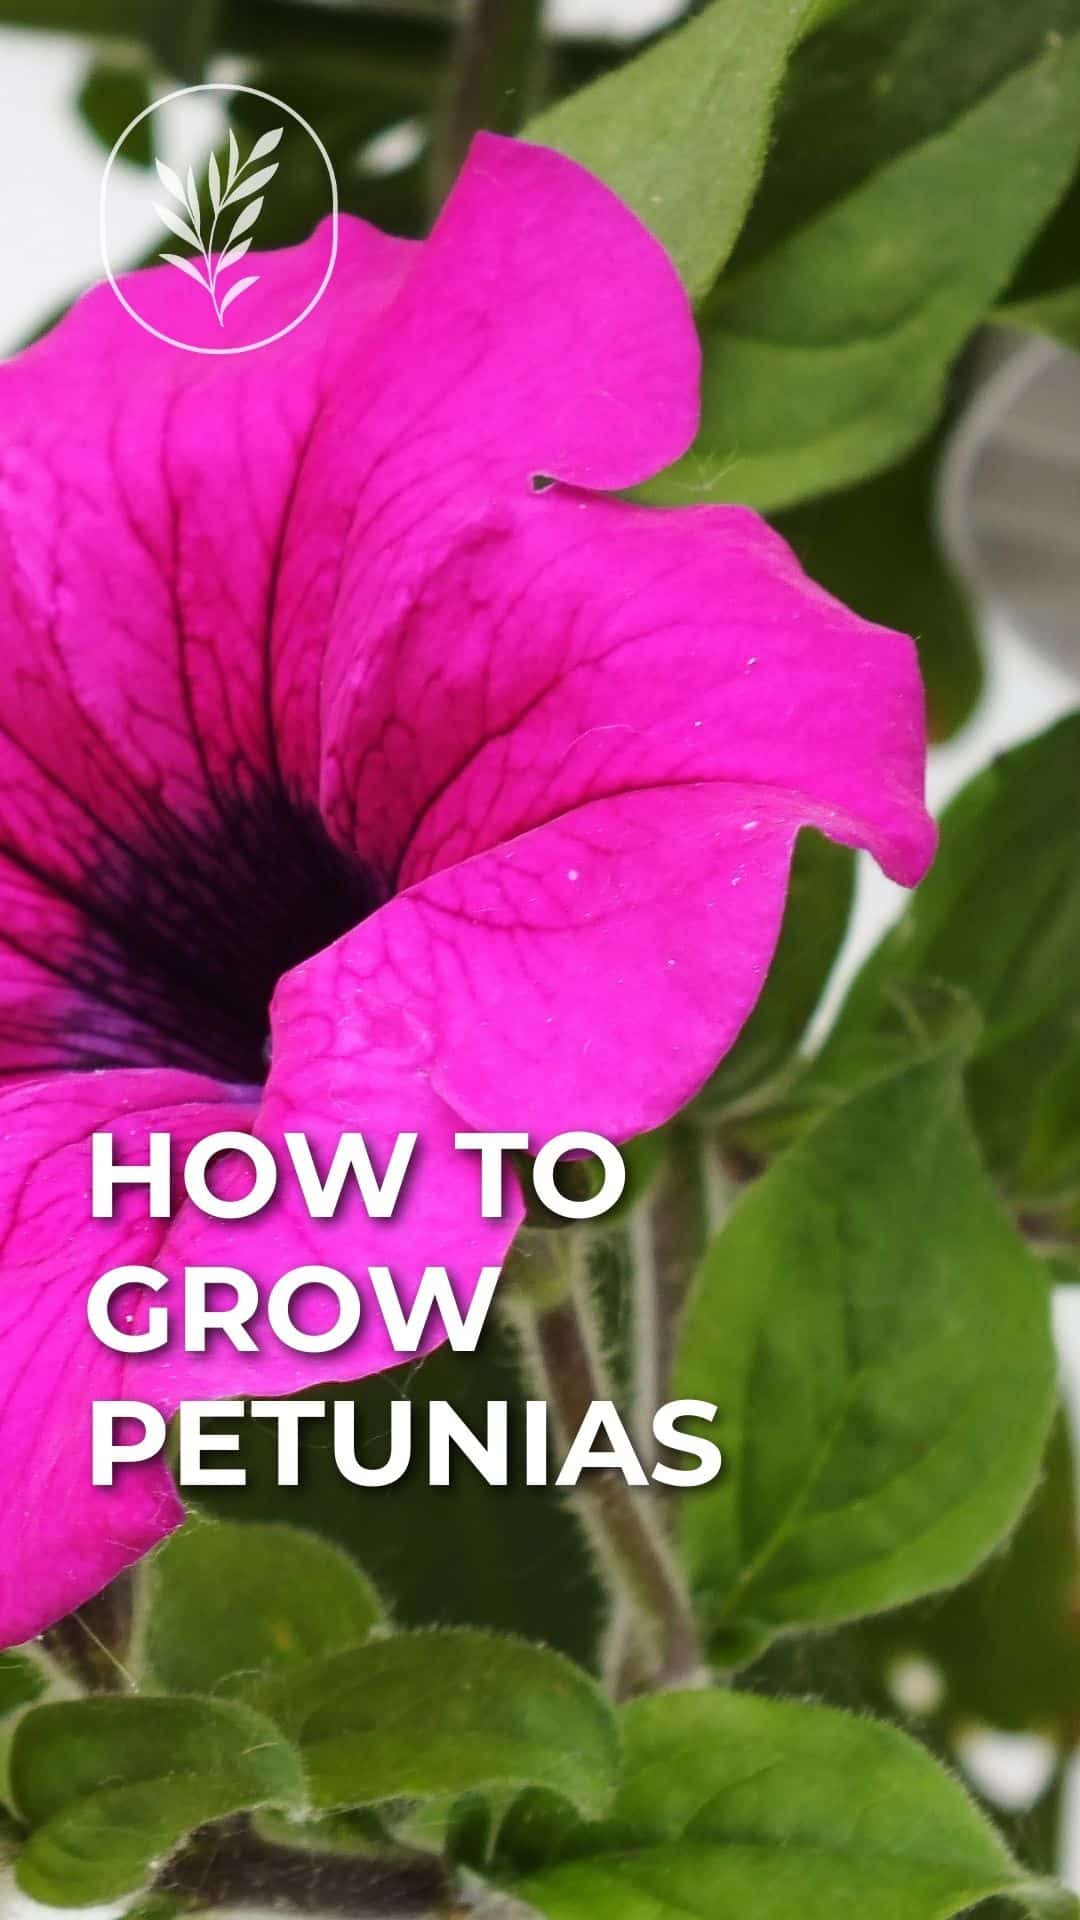 How to grow petunias - story via @home4theharvest